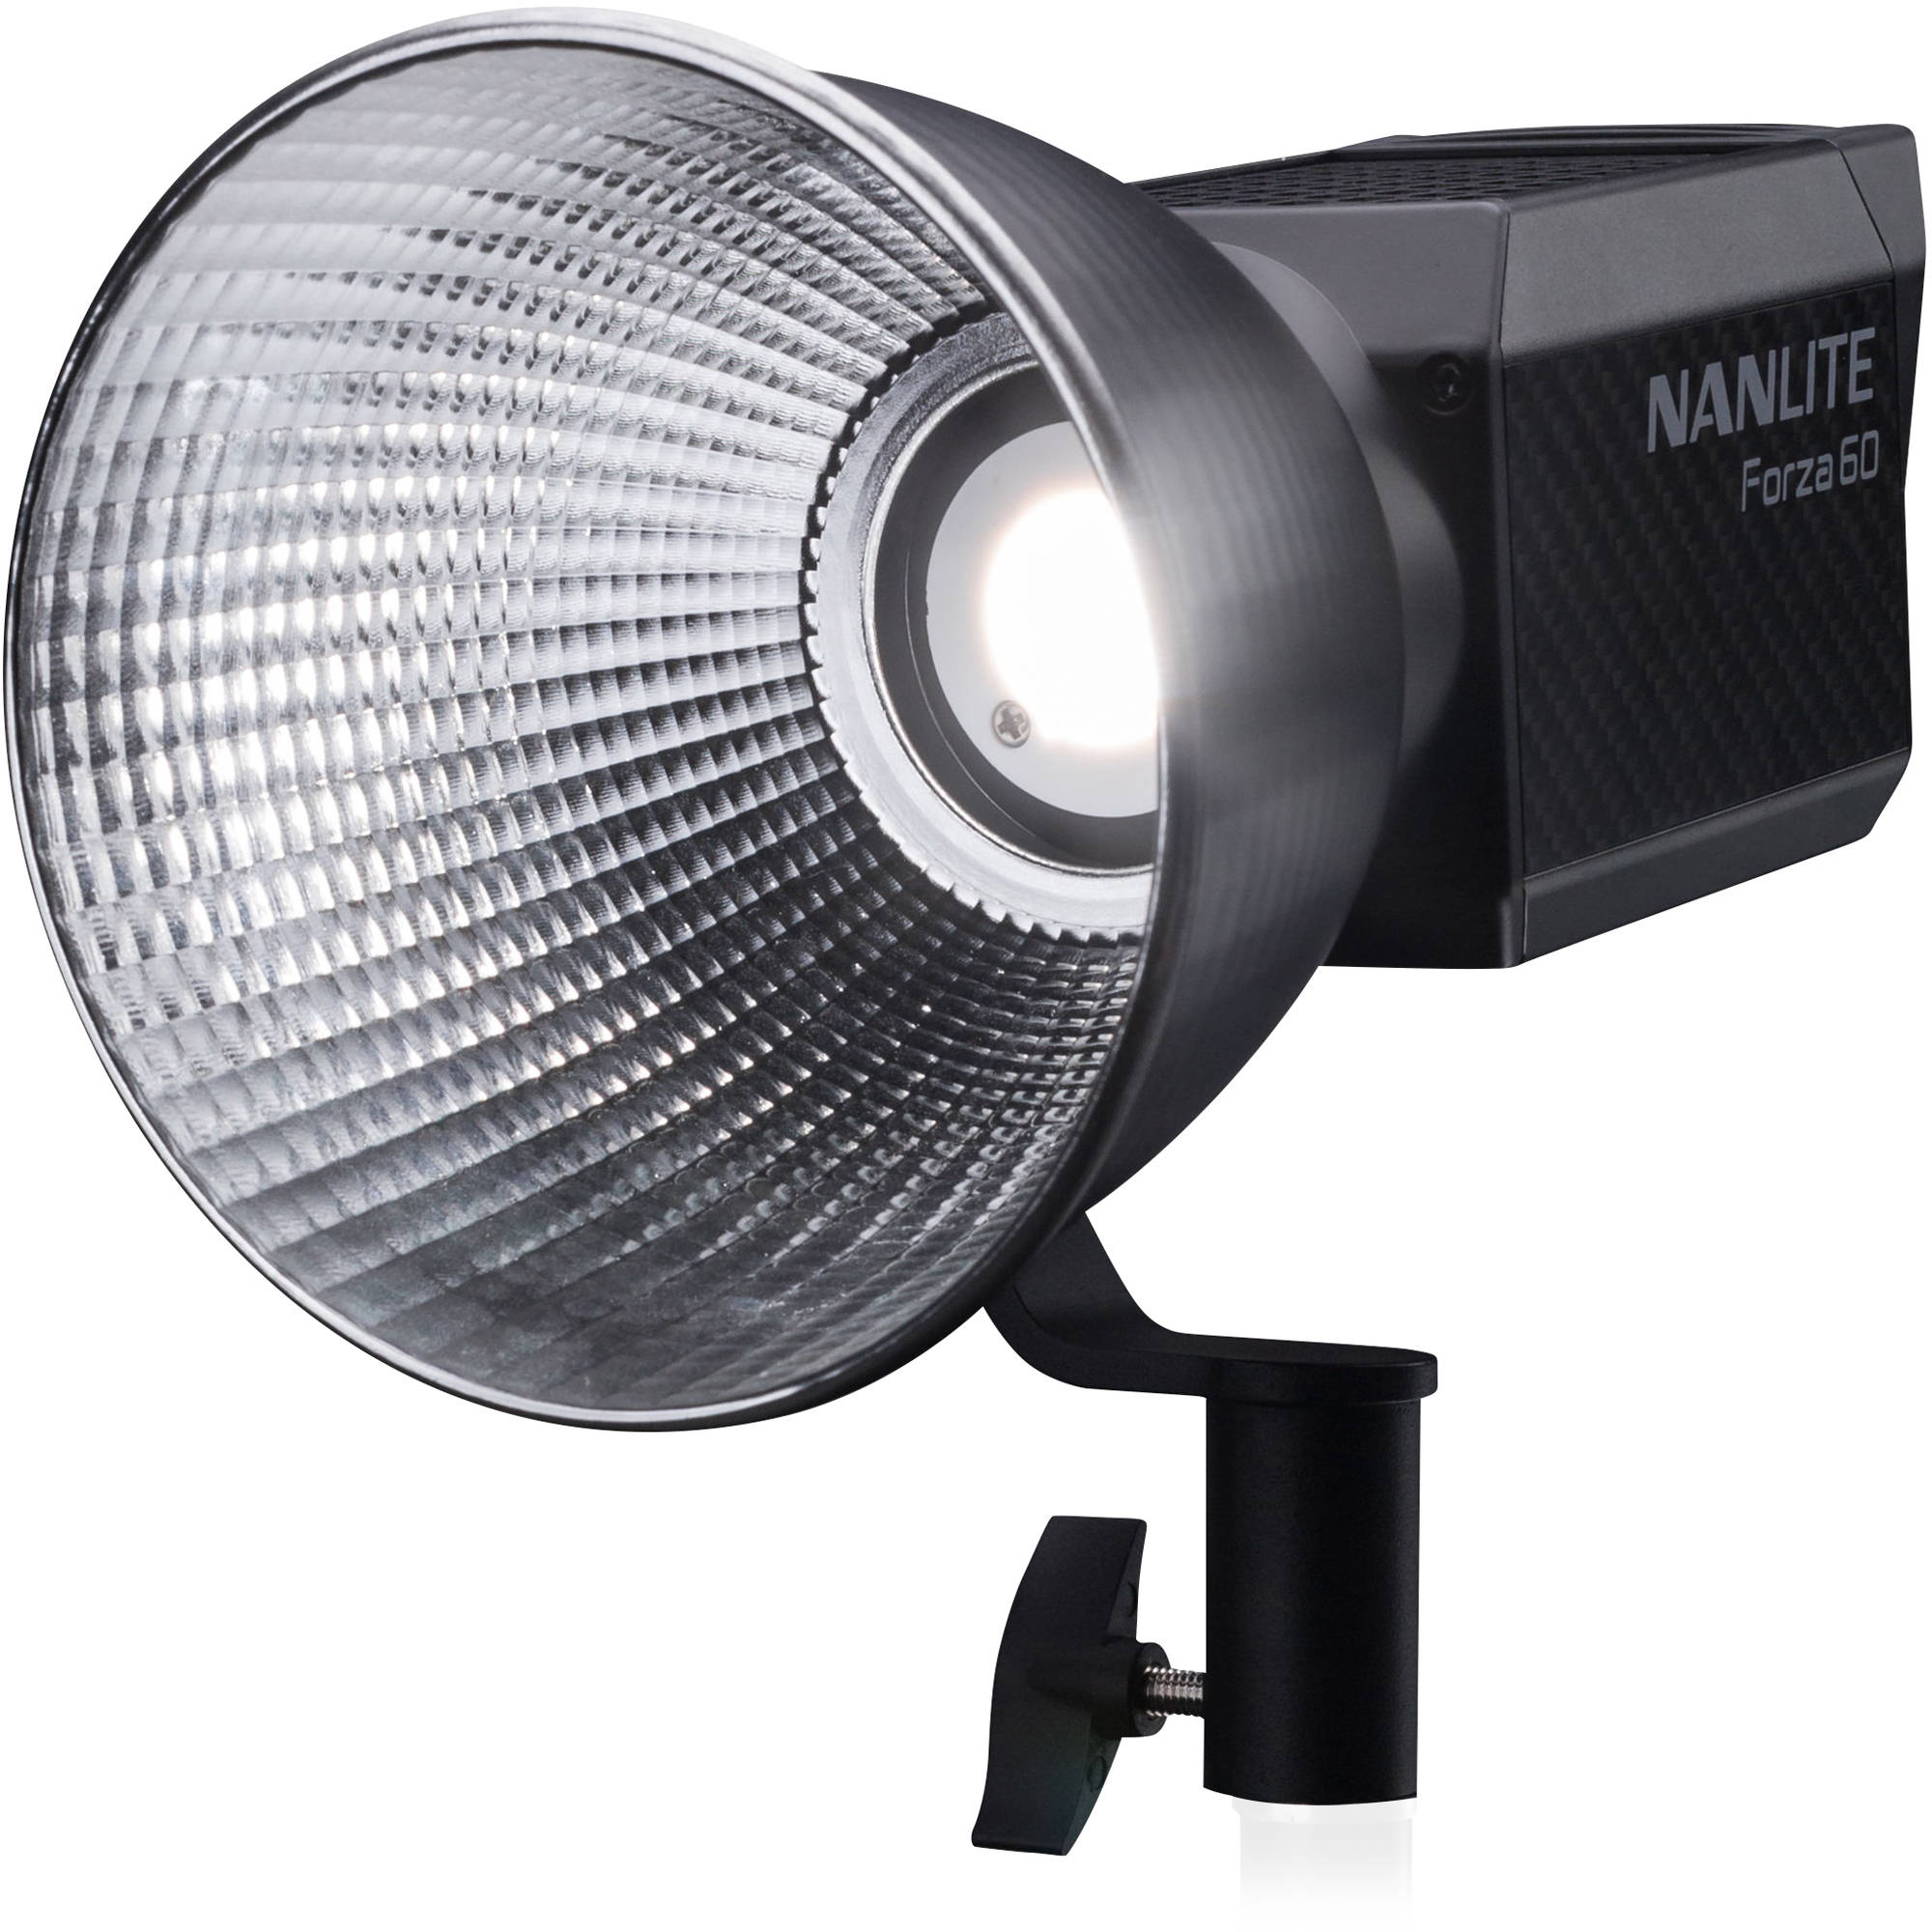 Đèn LED NanLite Forza 60 có công suất đầu ra ấn tượng